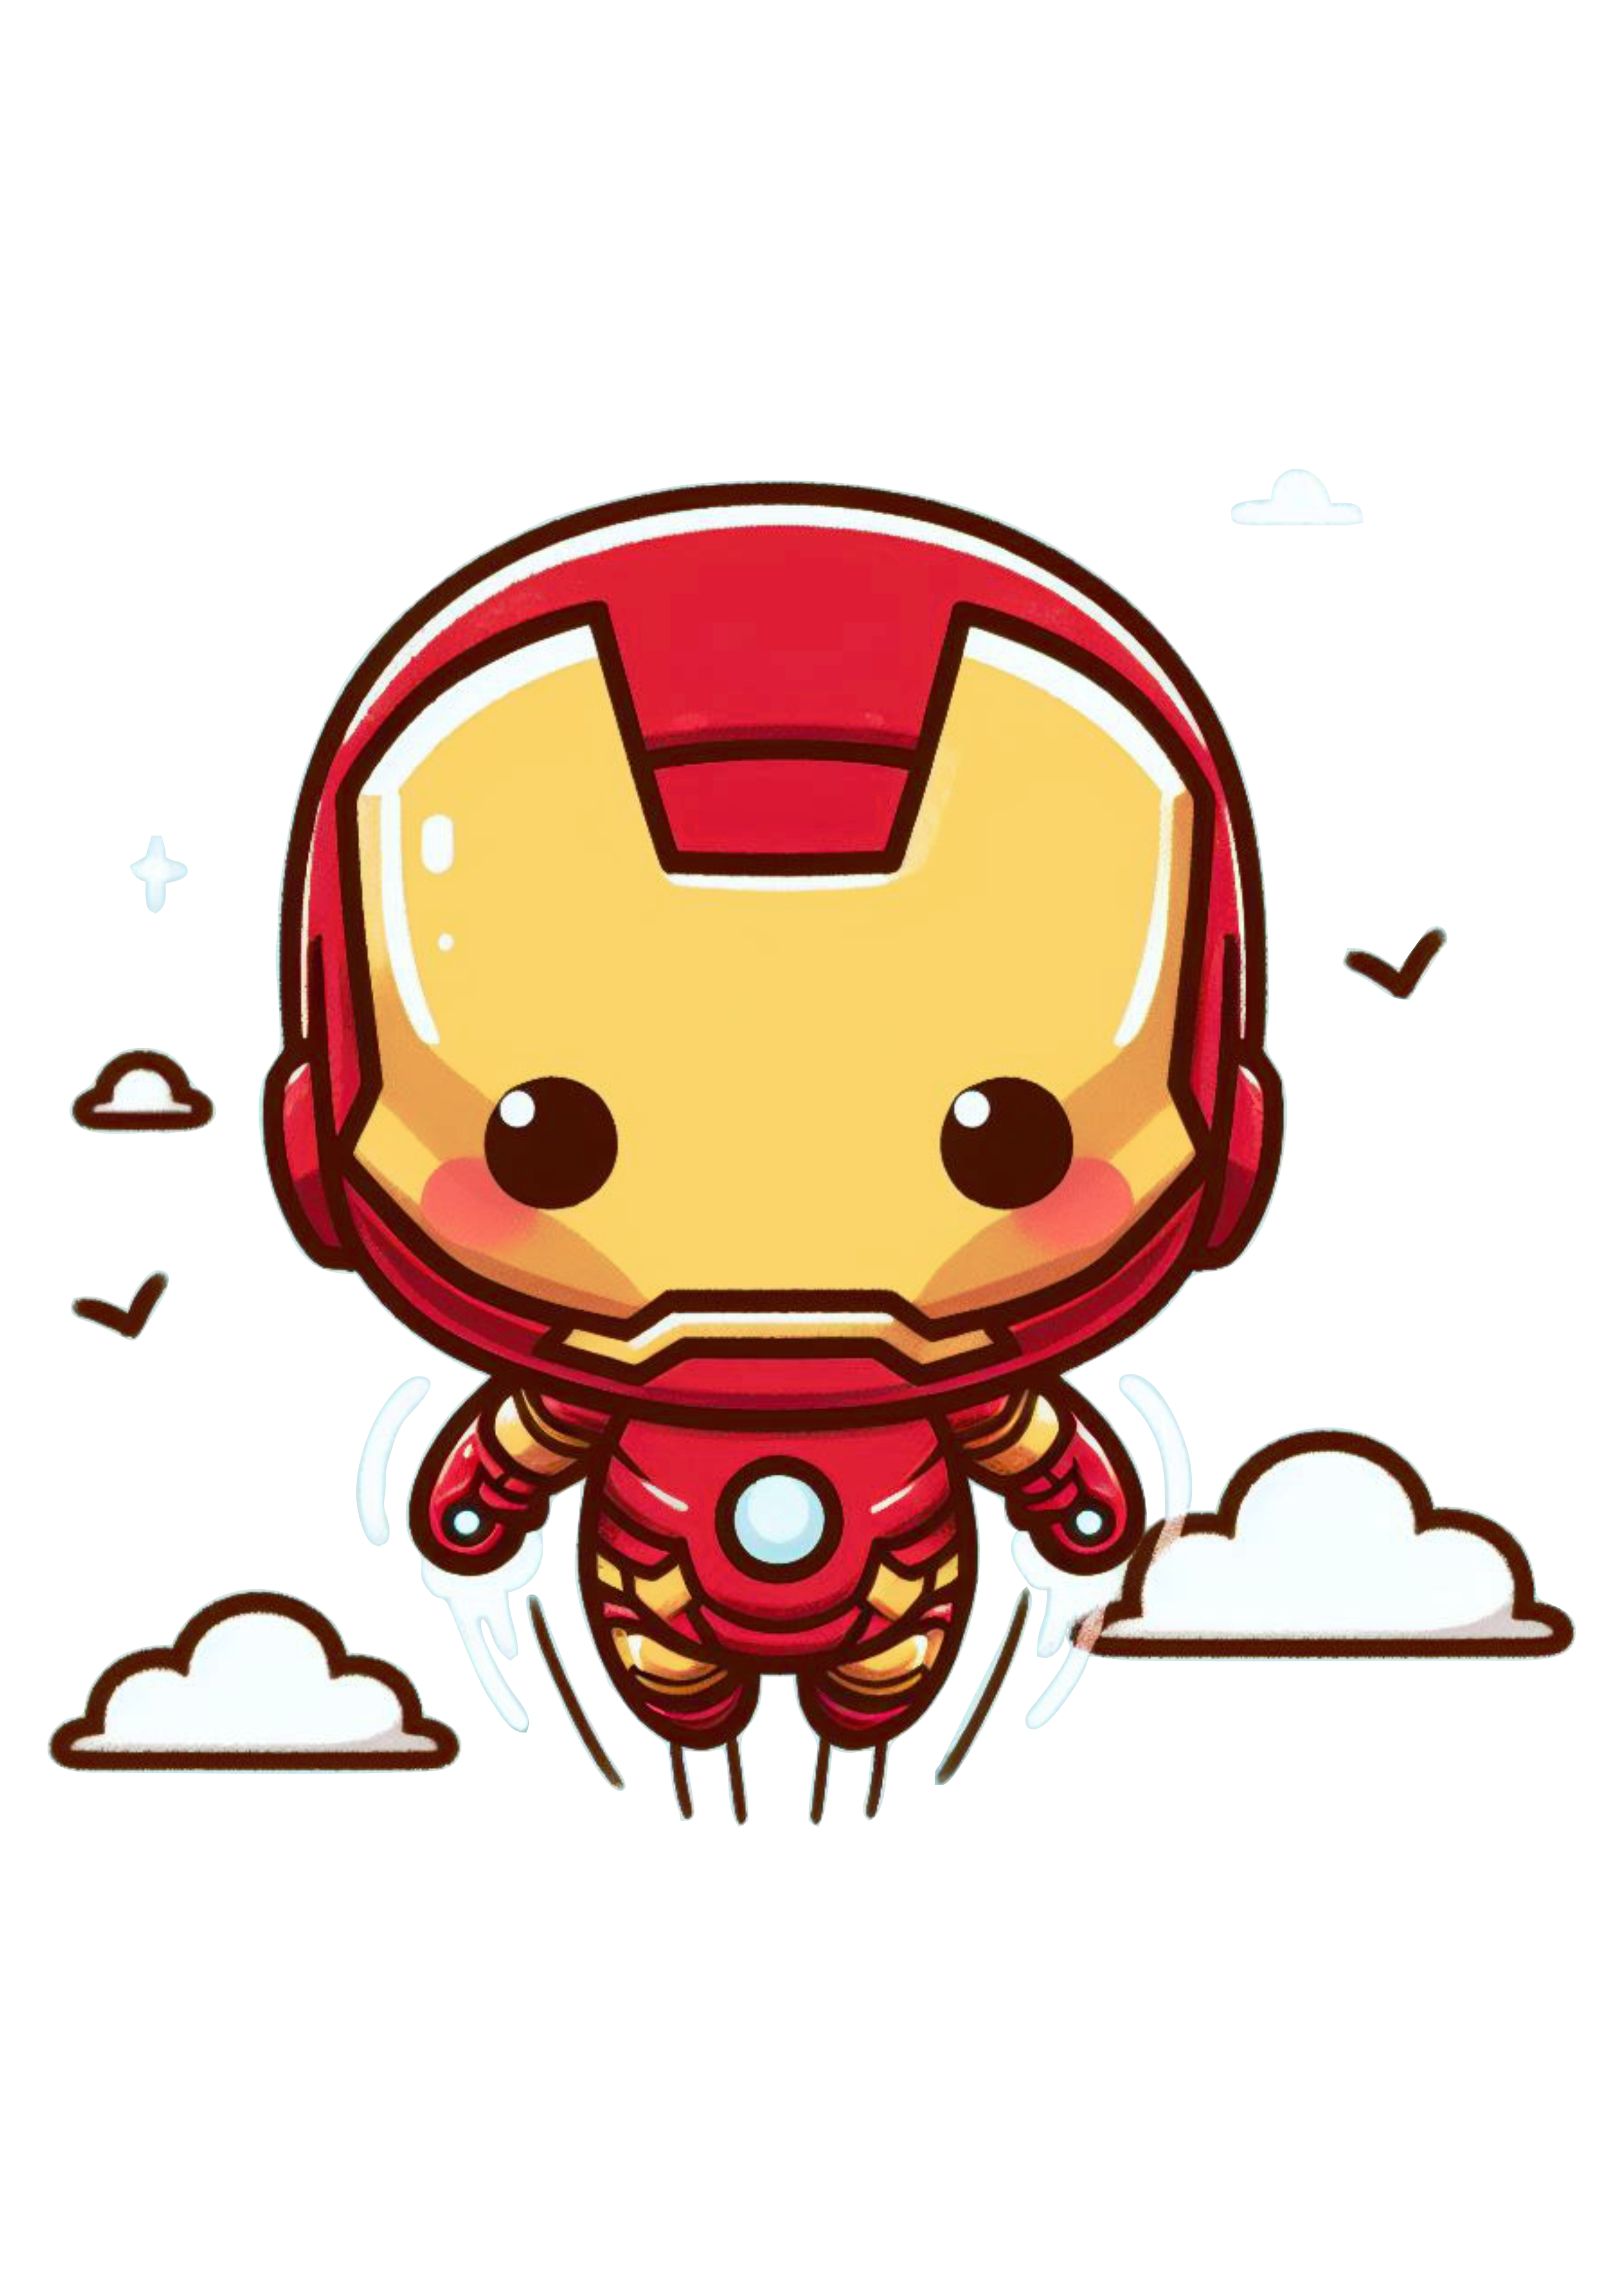 Homem de ferro voando bonequinho fofinho cute chibi marvel comics HQ de super herói fundo transparente Iron Man png